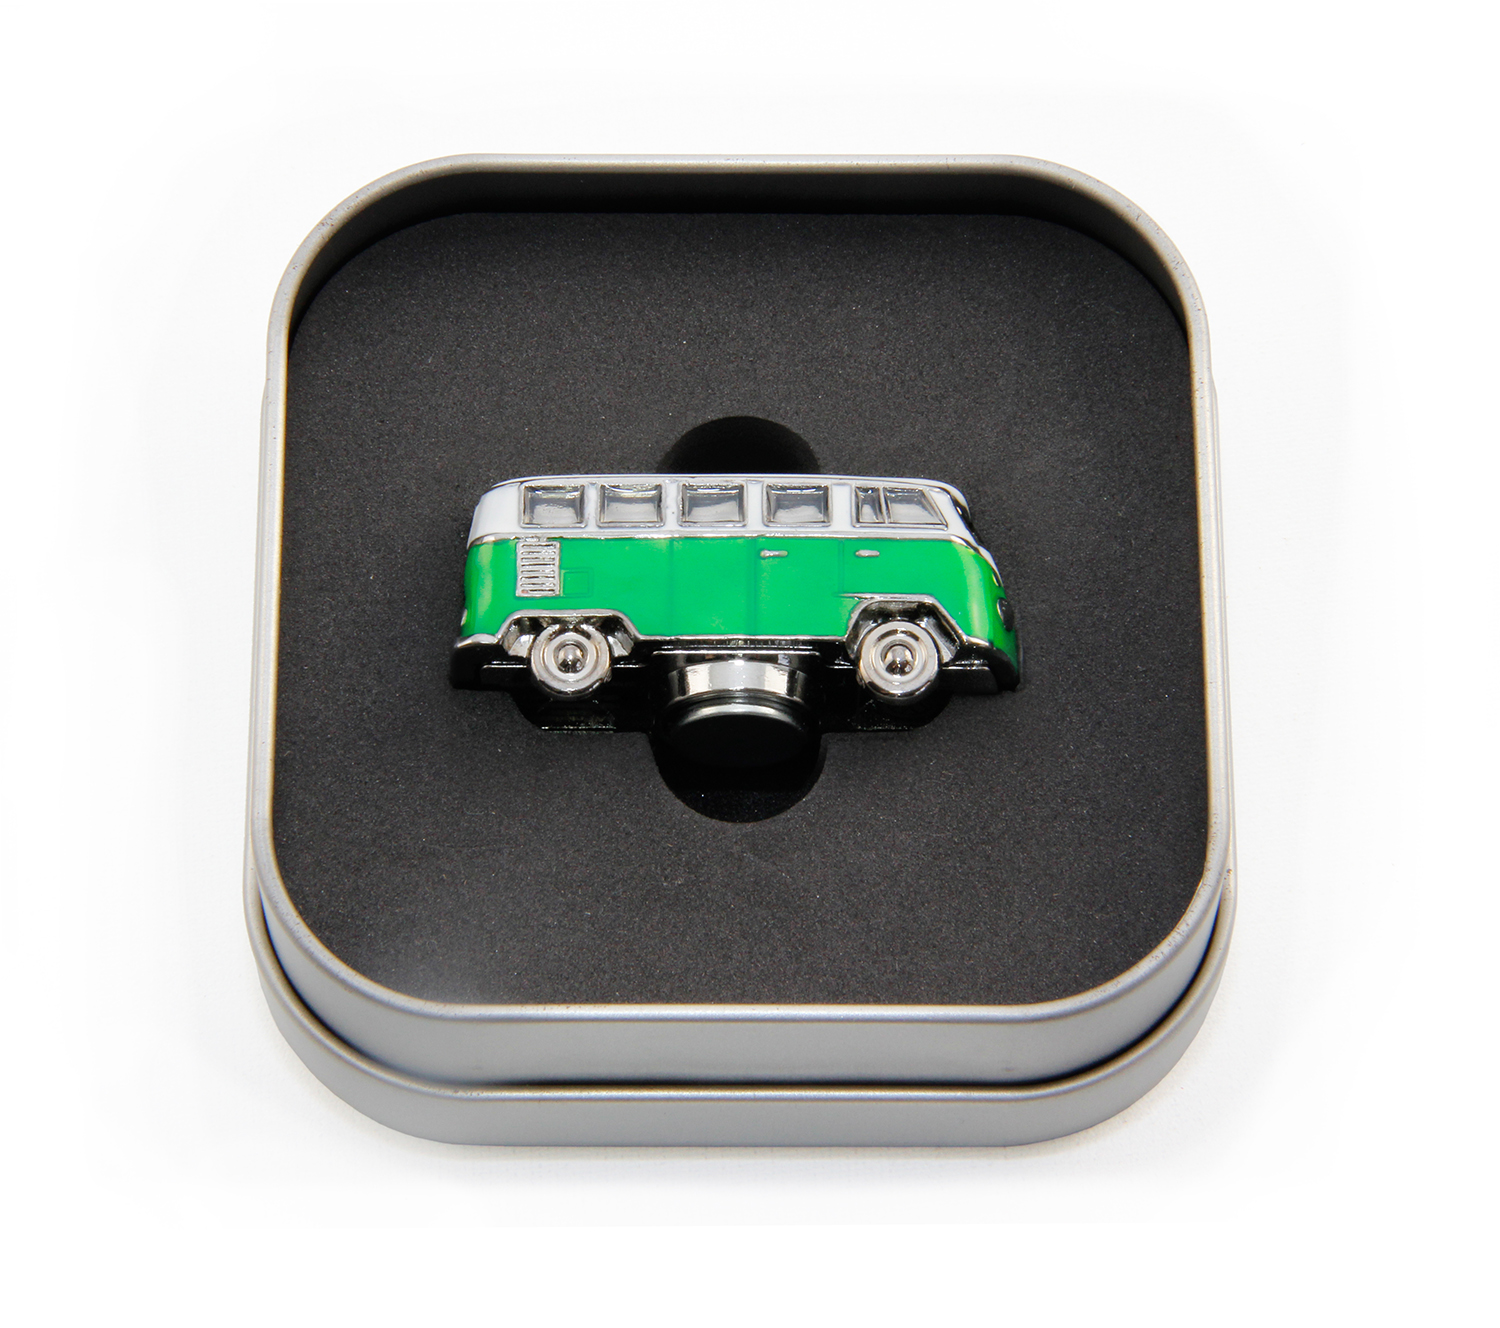 Mini modello 3D dell'autobus VW T1 Bulli con magnete in confezione regalo